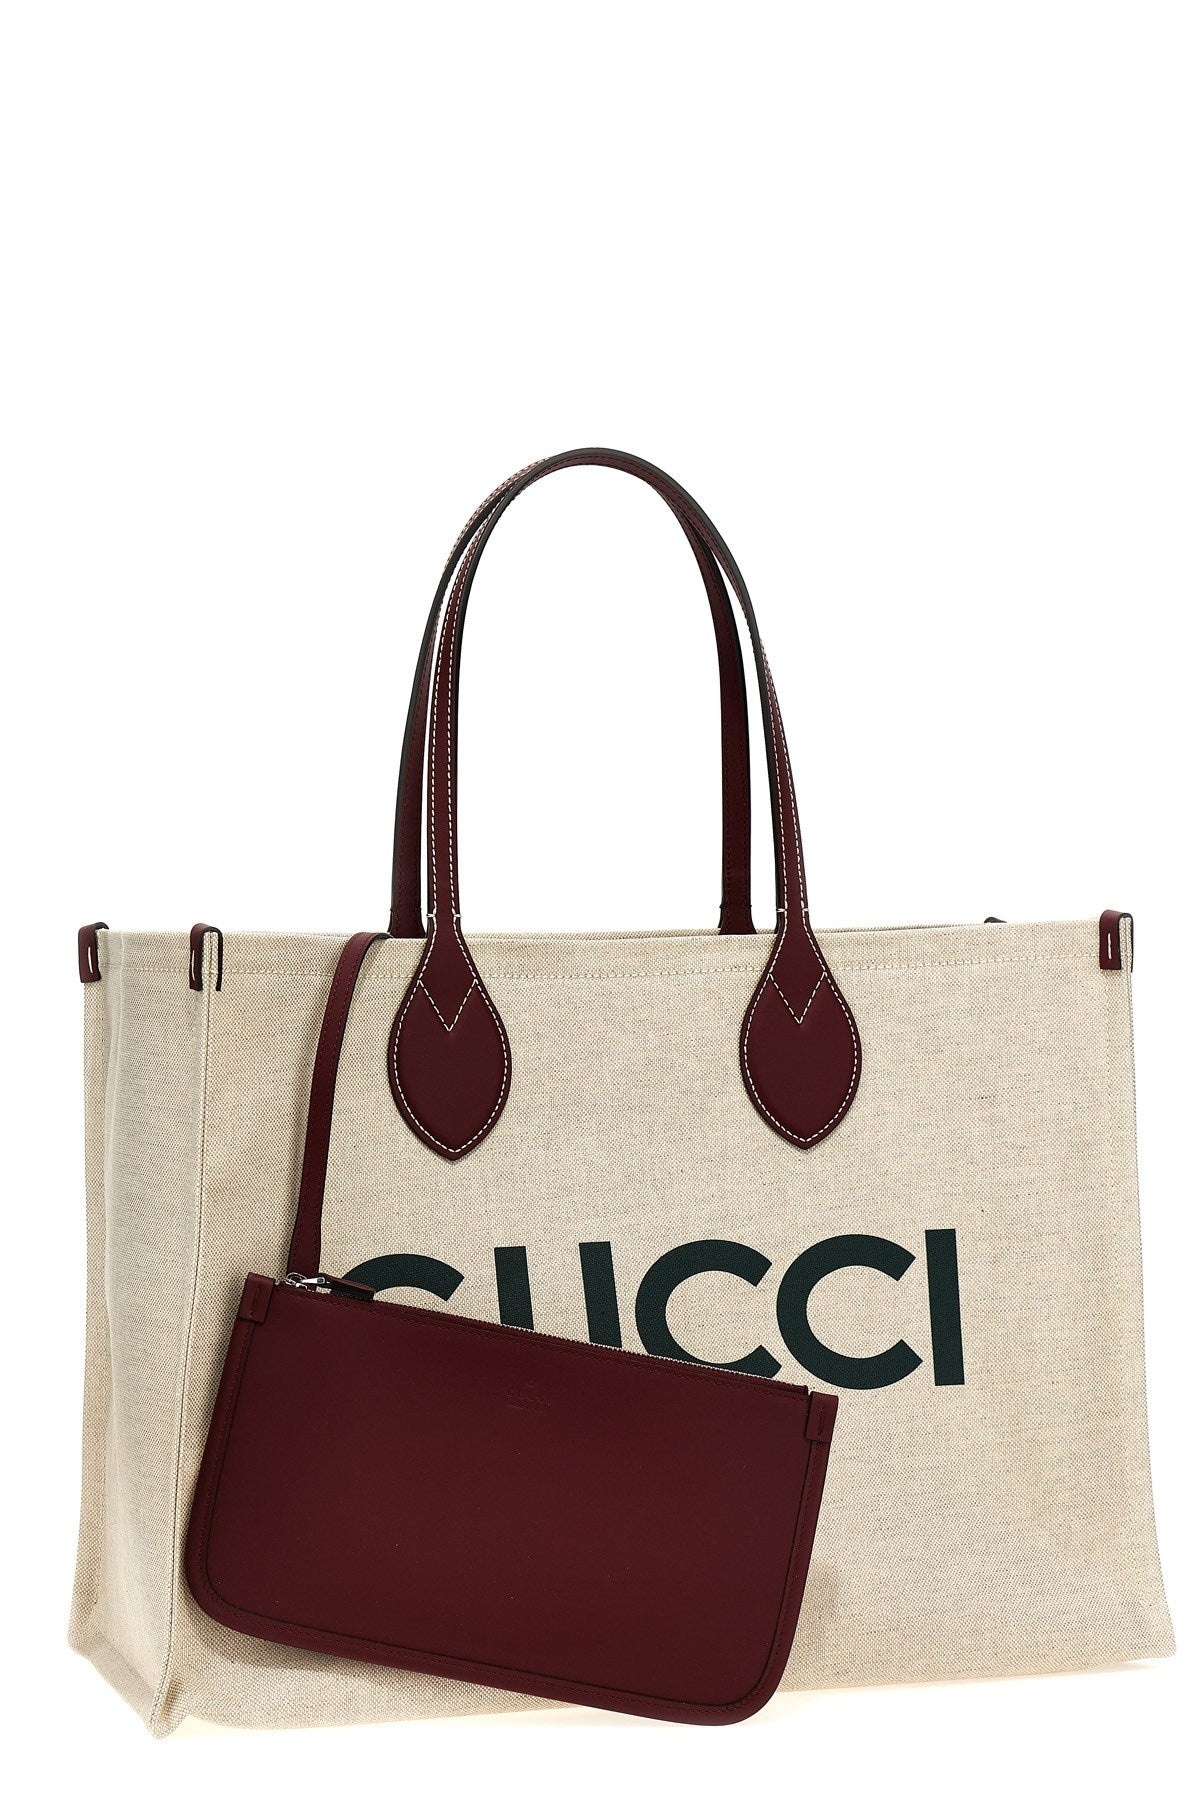 Gucci Women 'Gucci' Shopping Bag - 3